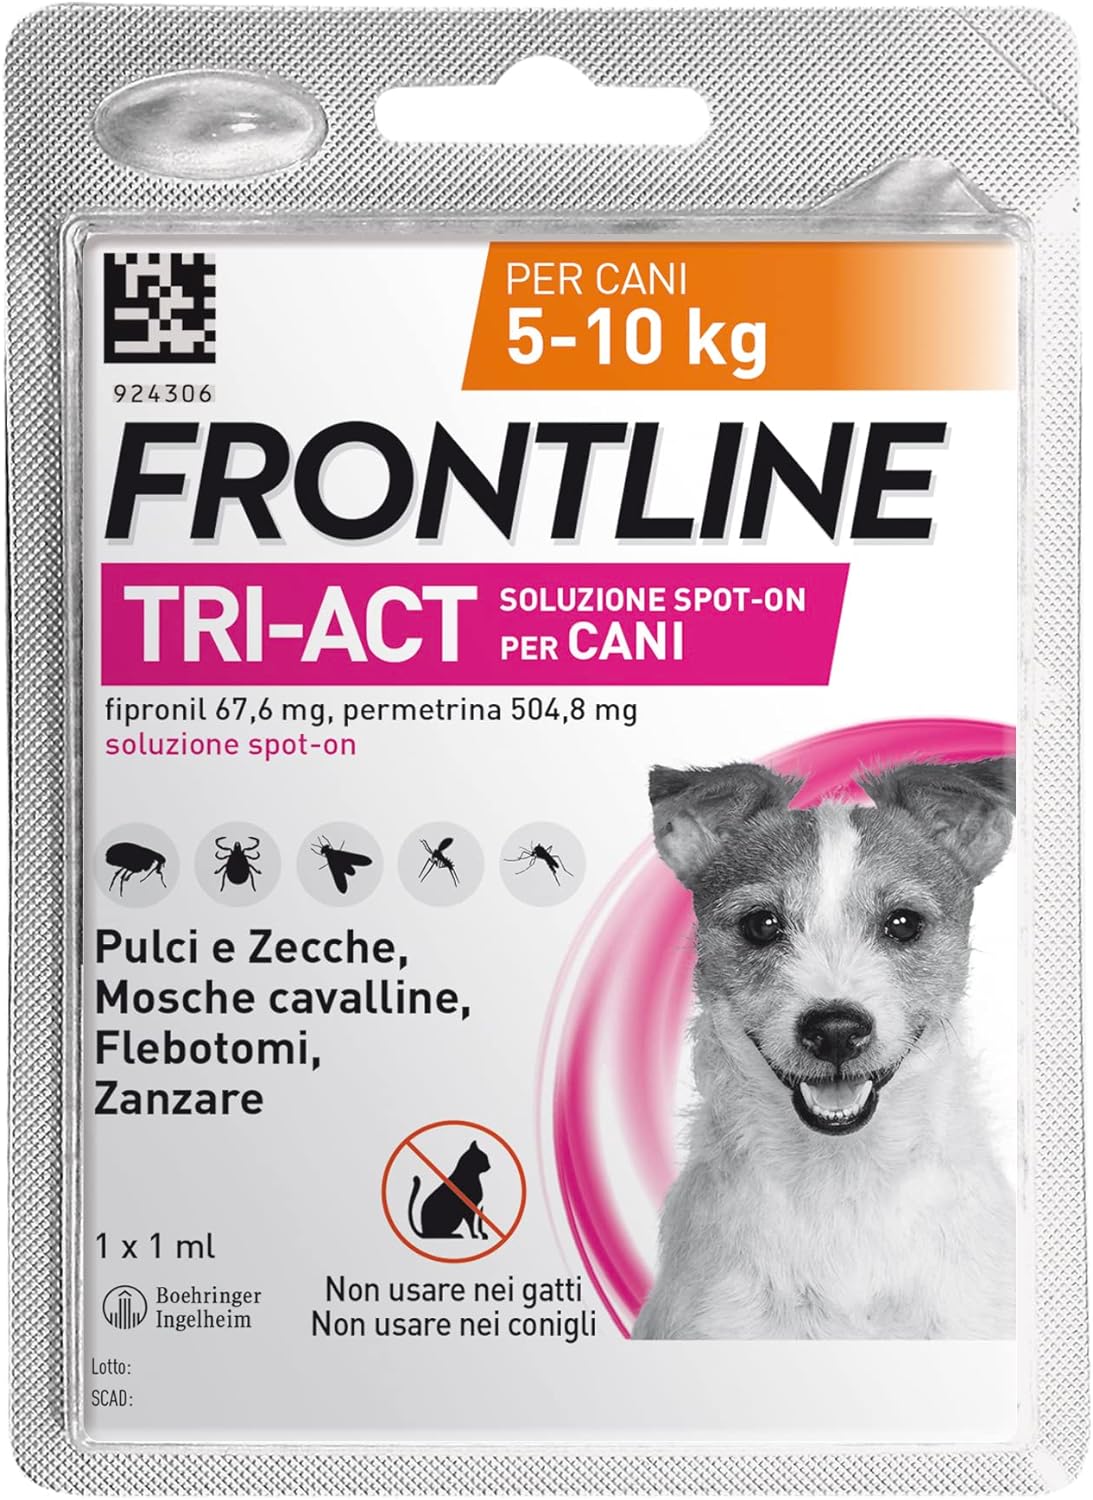 FRONTLINE TriAct, Antiparassitario per Cani e Cuccioli di Lunga Durata, Protegge il Cane da Pulci, zecche, Zanzare, Pappataci e Leishmaniosi, 1 Pipetta